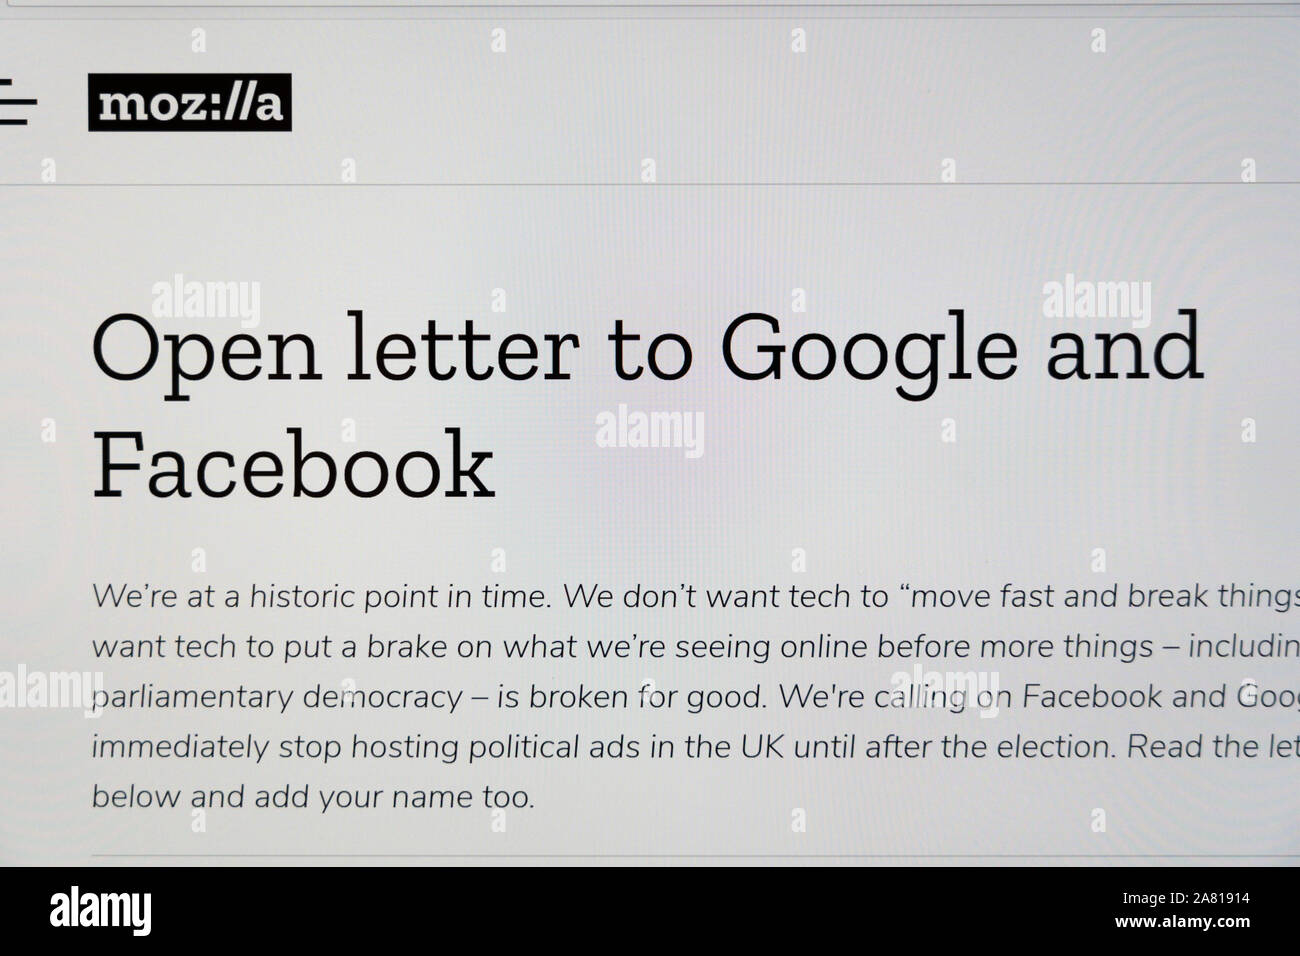 Ein offener Brief von Mozilla und anderen Aktivisten zu Facebook und Google fragt nach einem Verbot politischer Werbung vor den allgemeinen Wahlen in Großbritannien Stockfoto